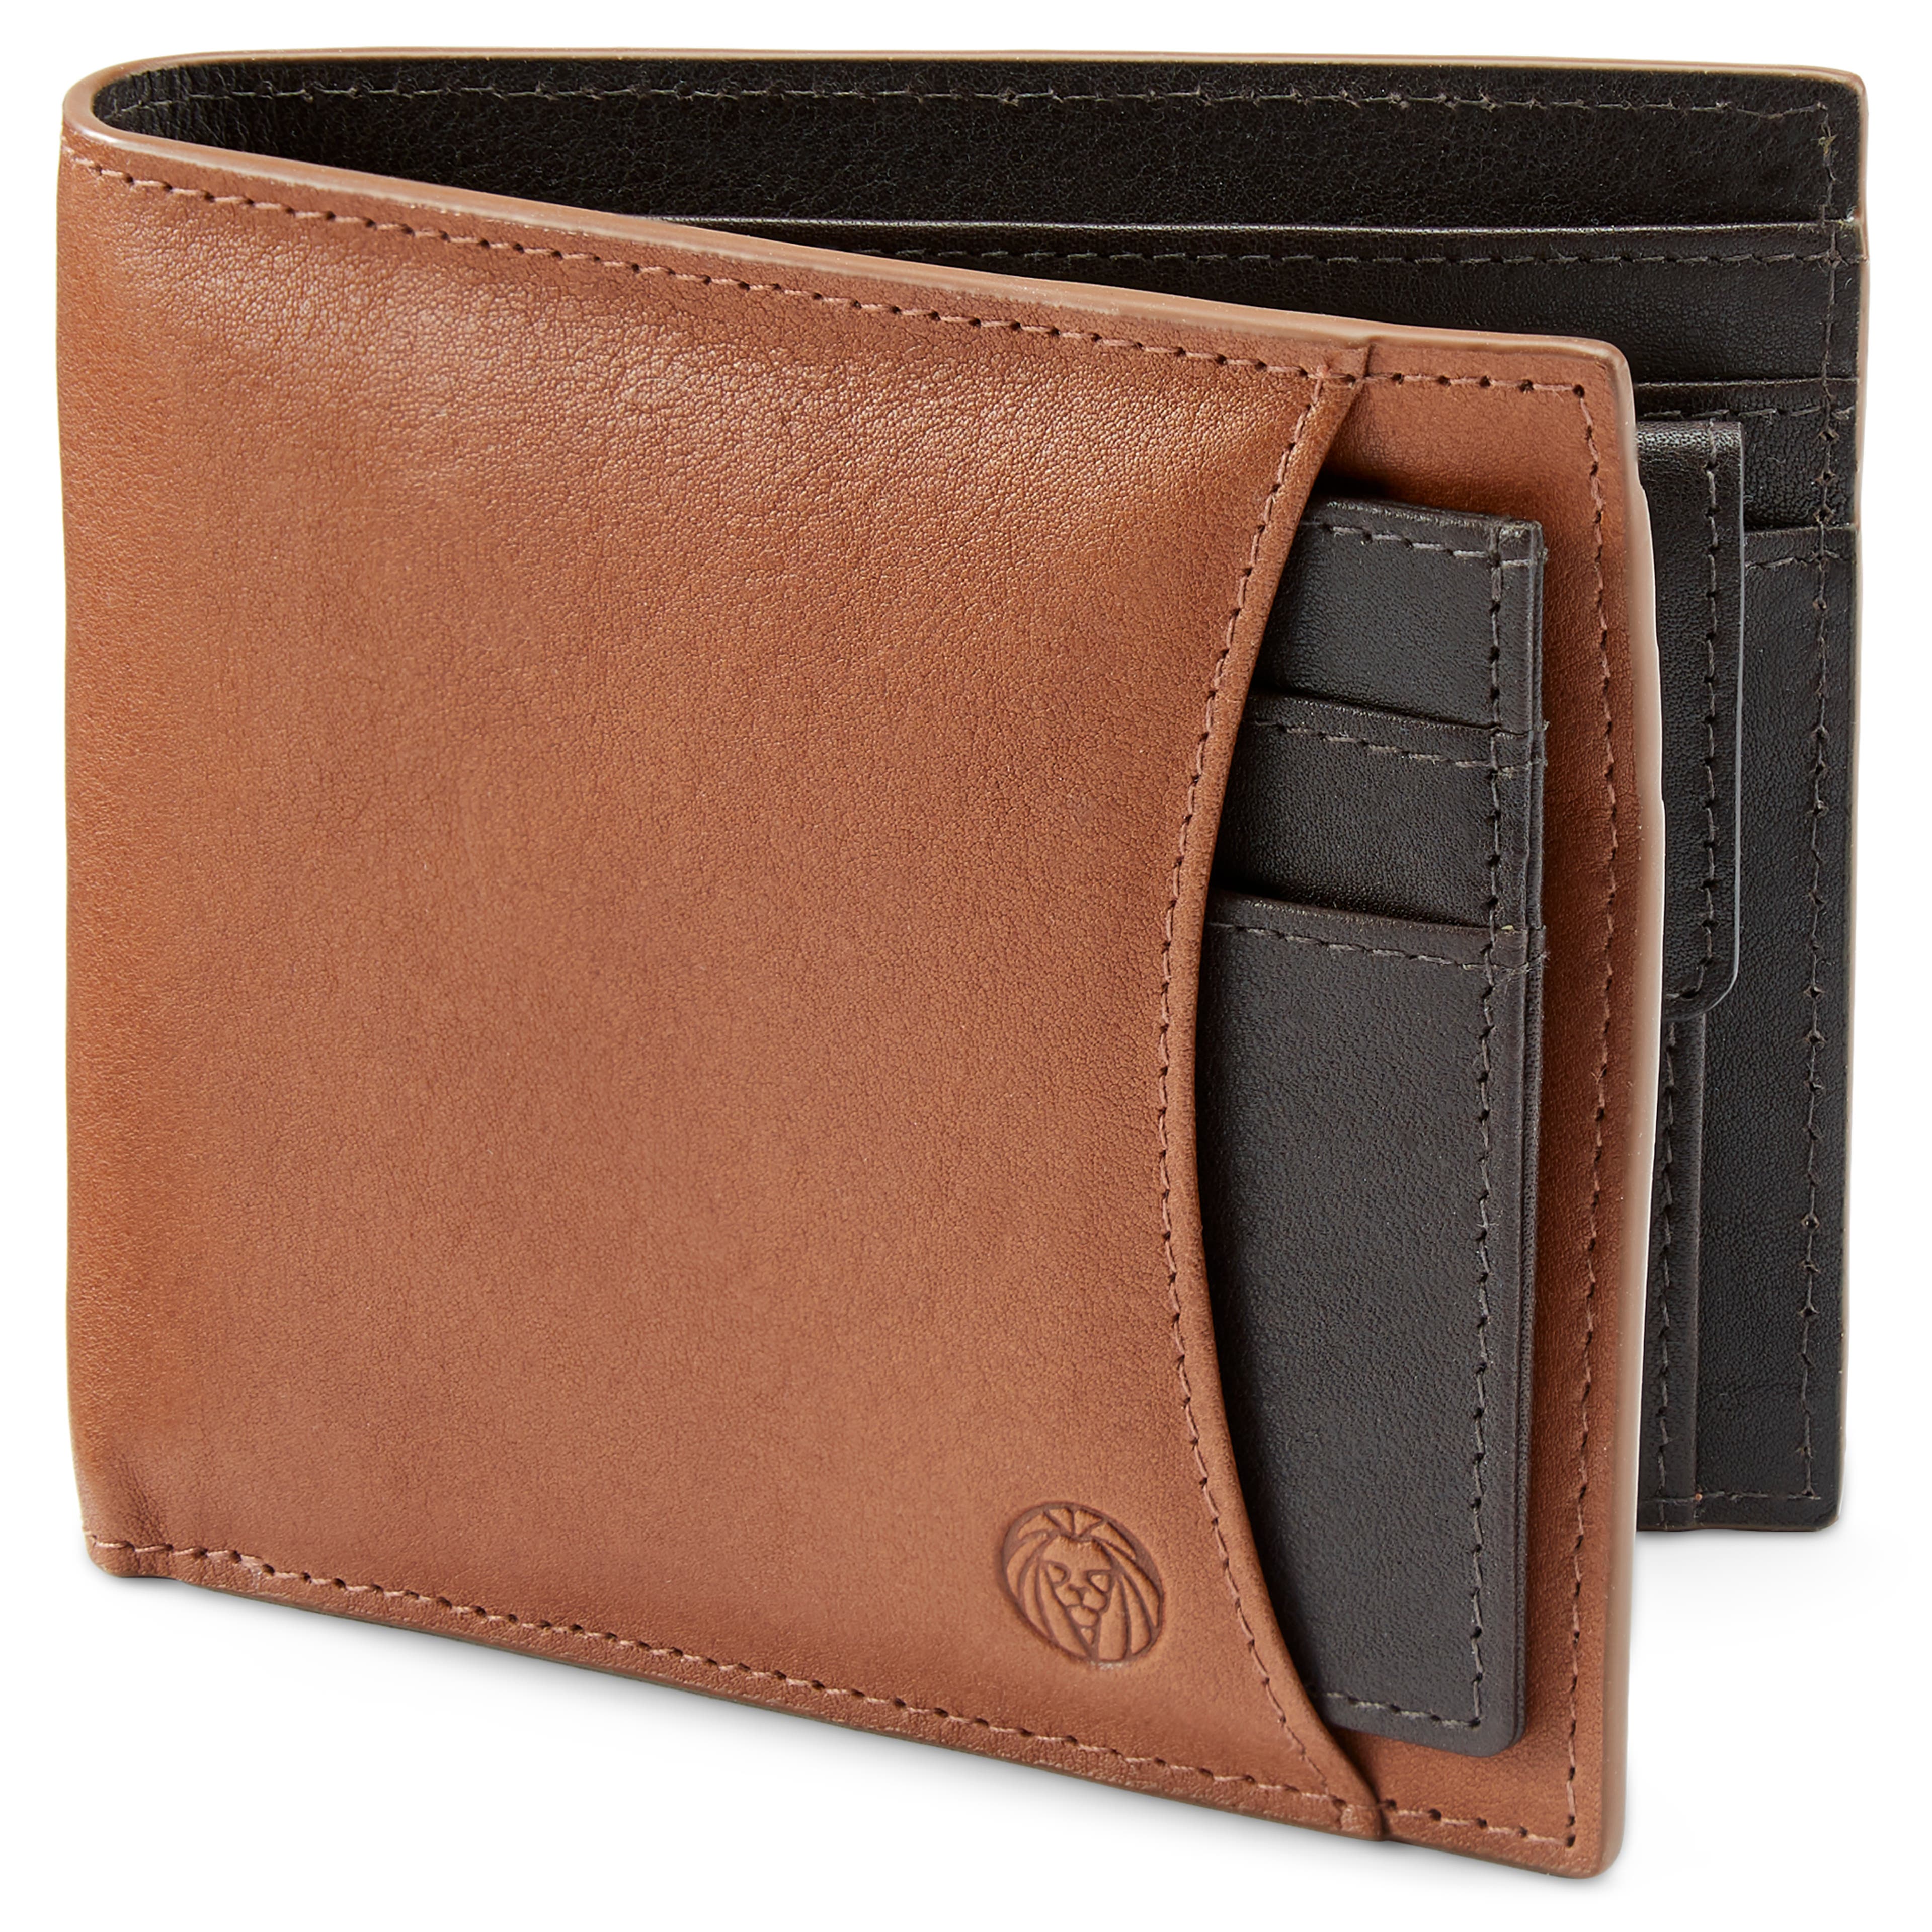 Kasztanowo-ciemnobrązowy skórzany portfel i etui na karty z blokadą RFID Lincoln